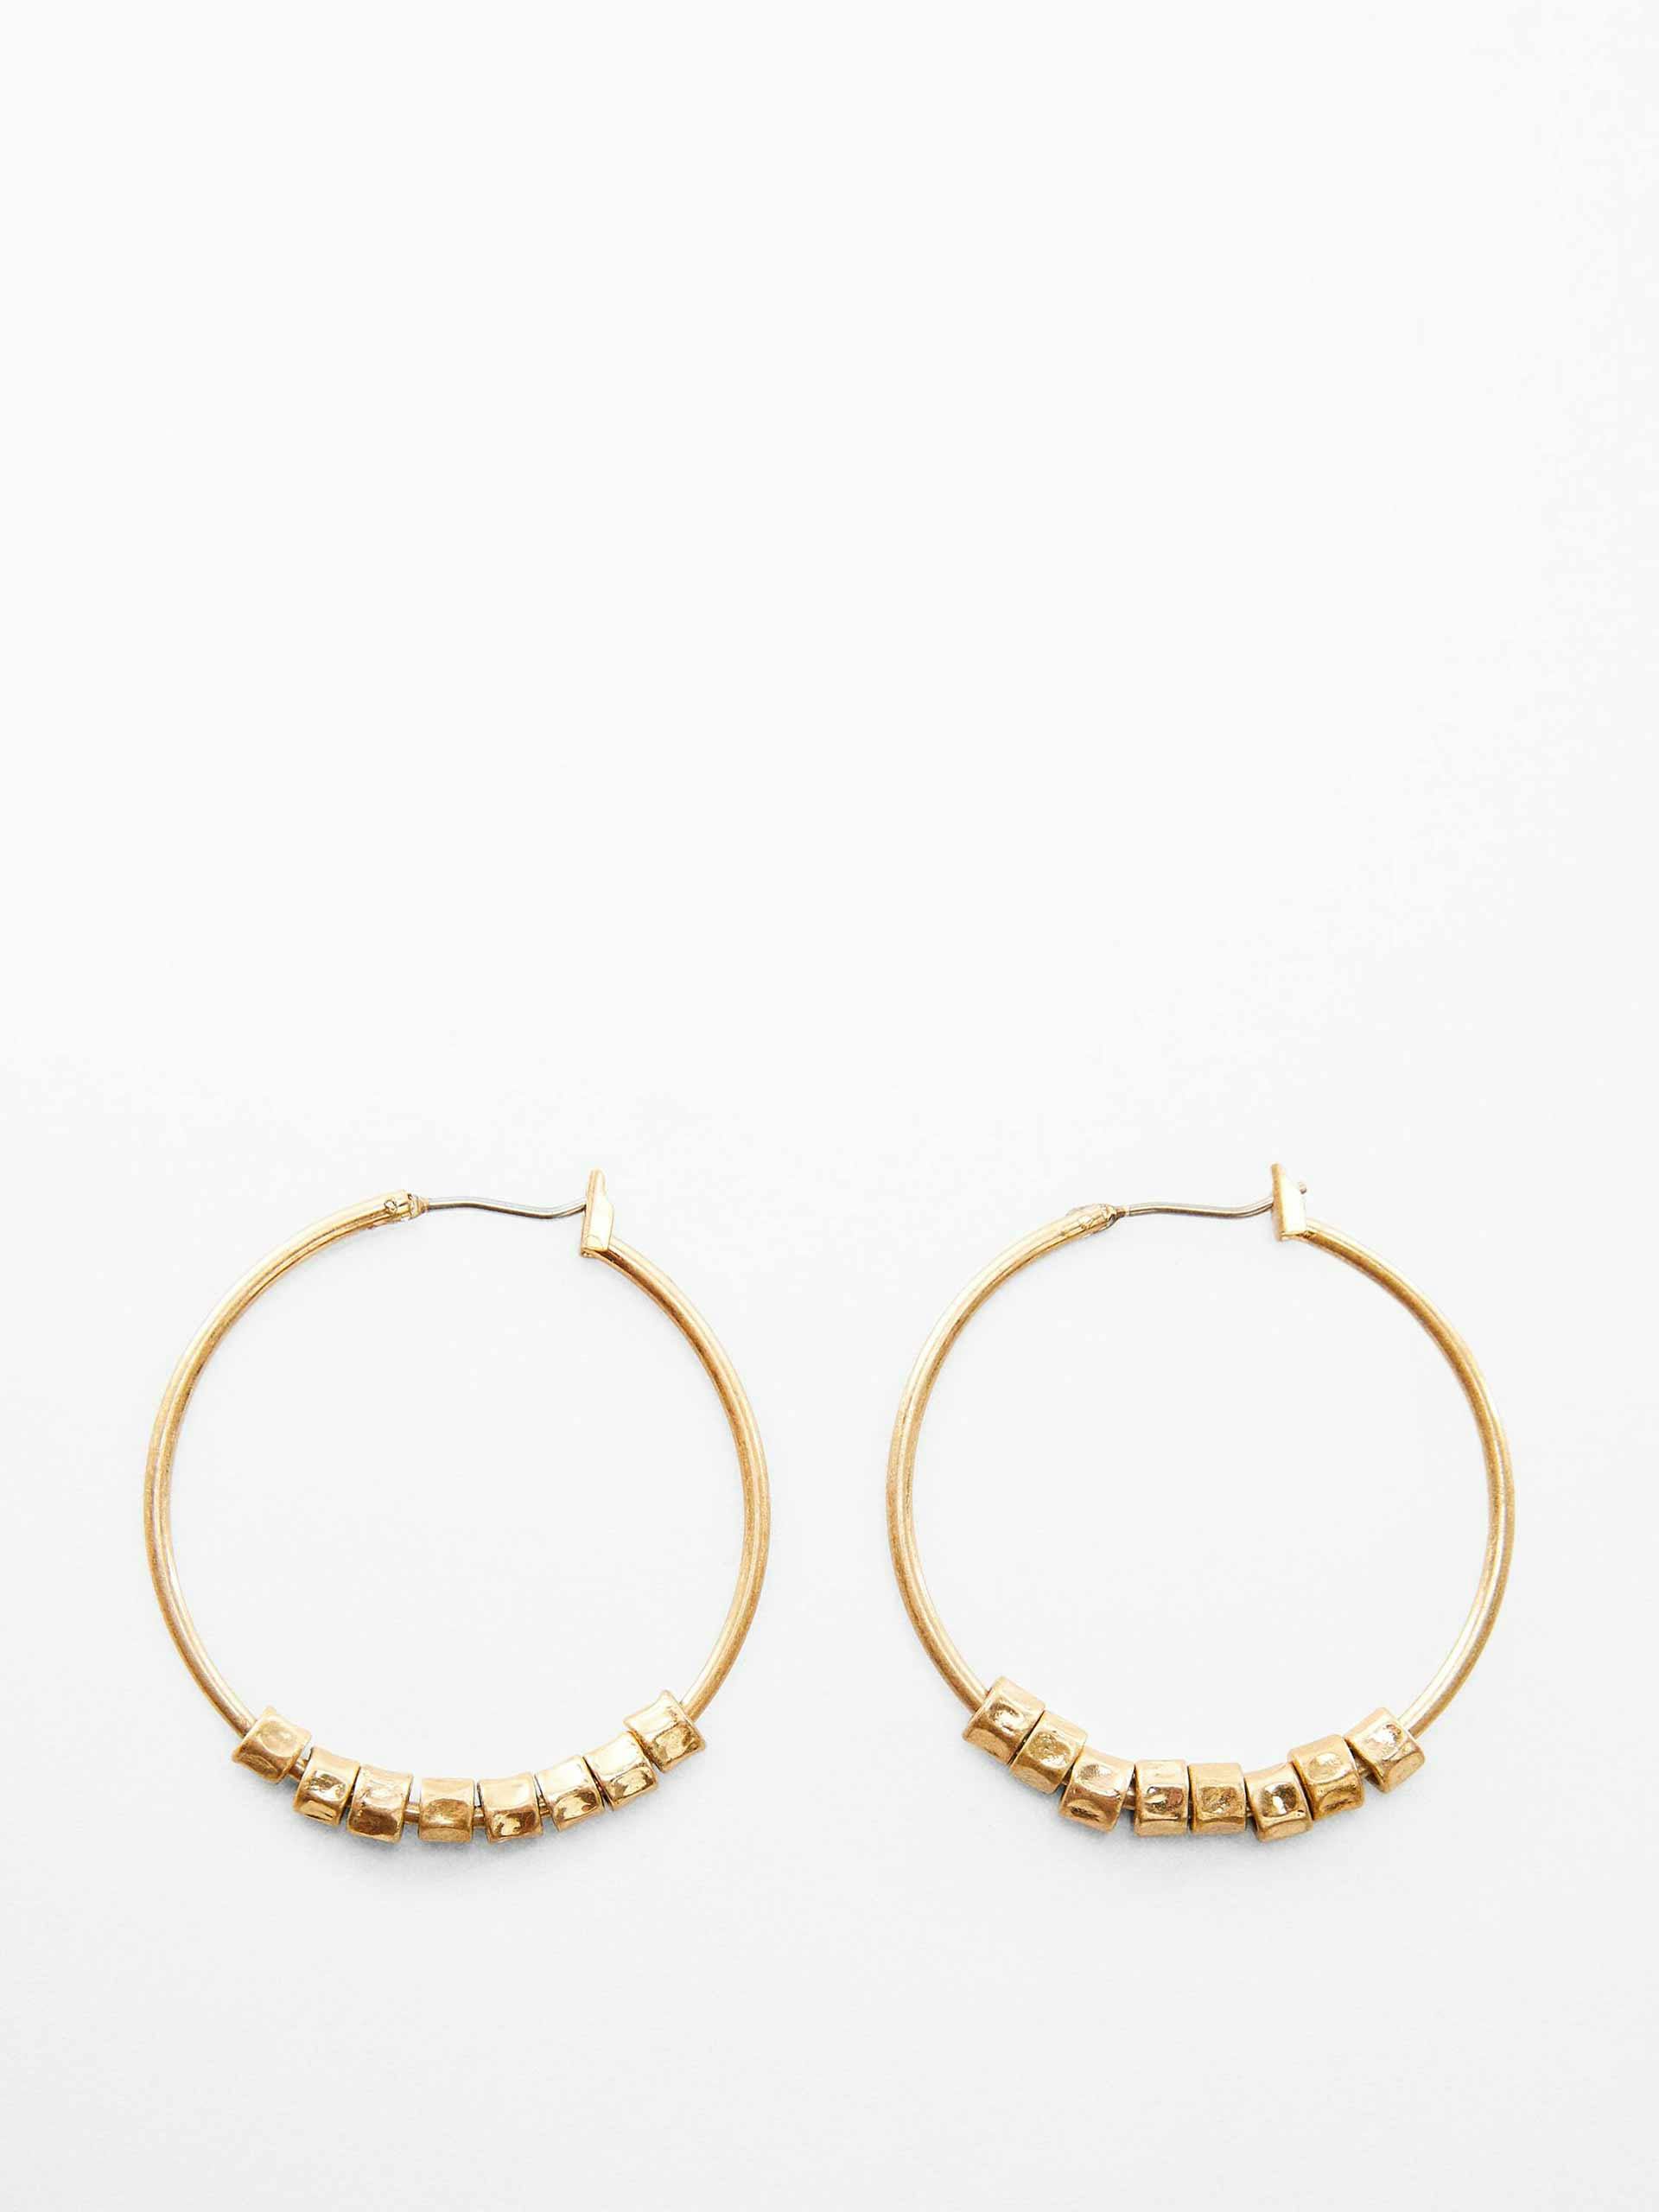 Beaded gold loop earrings